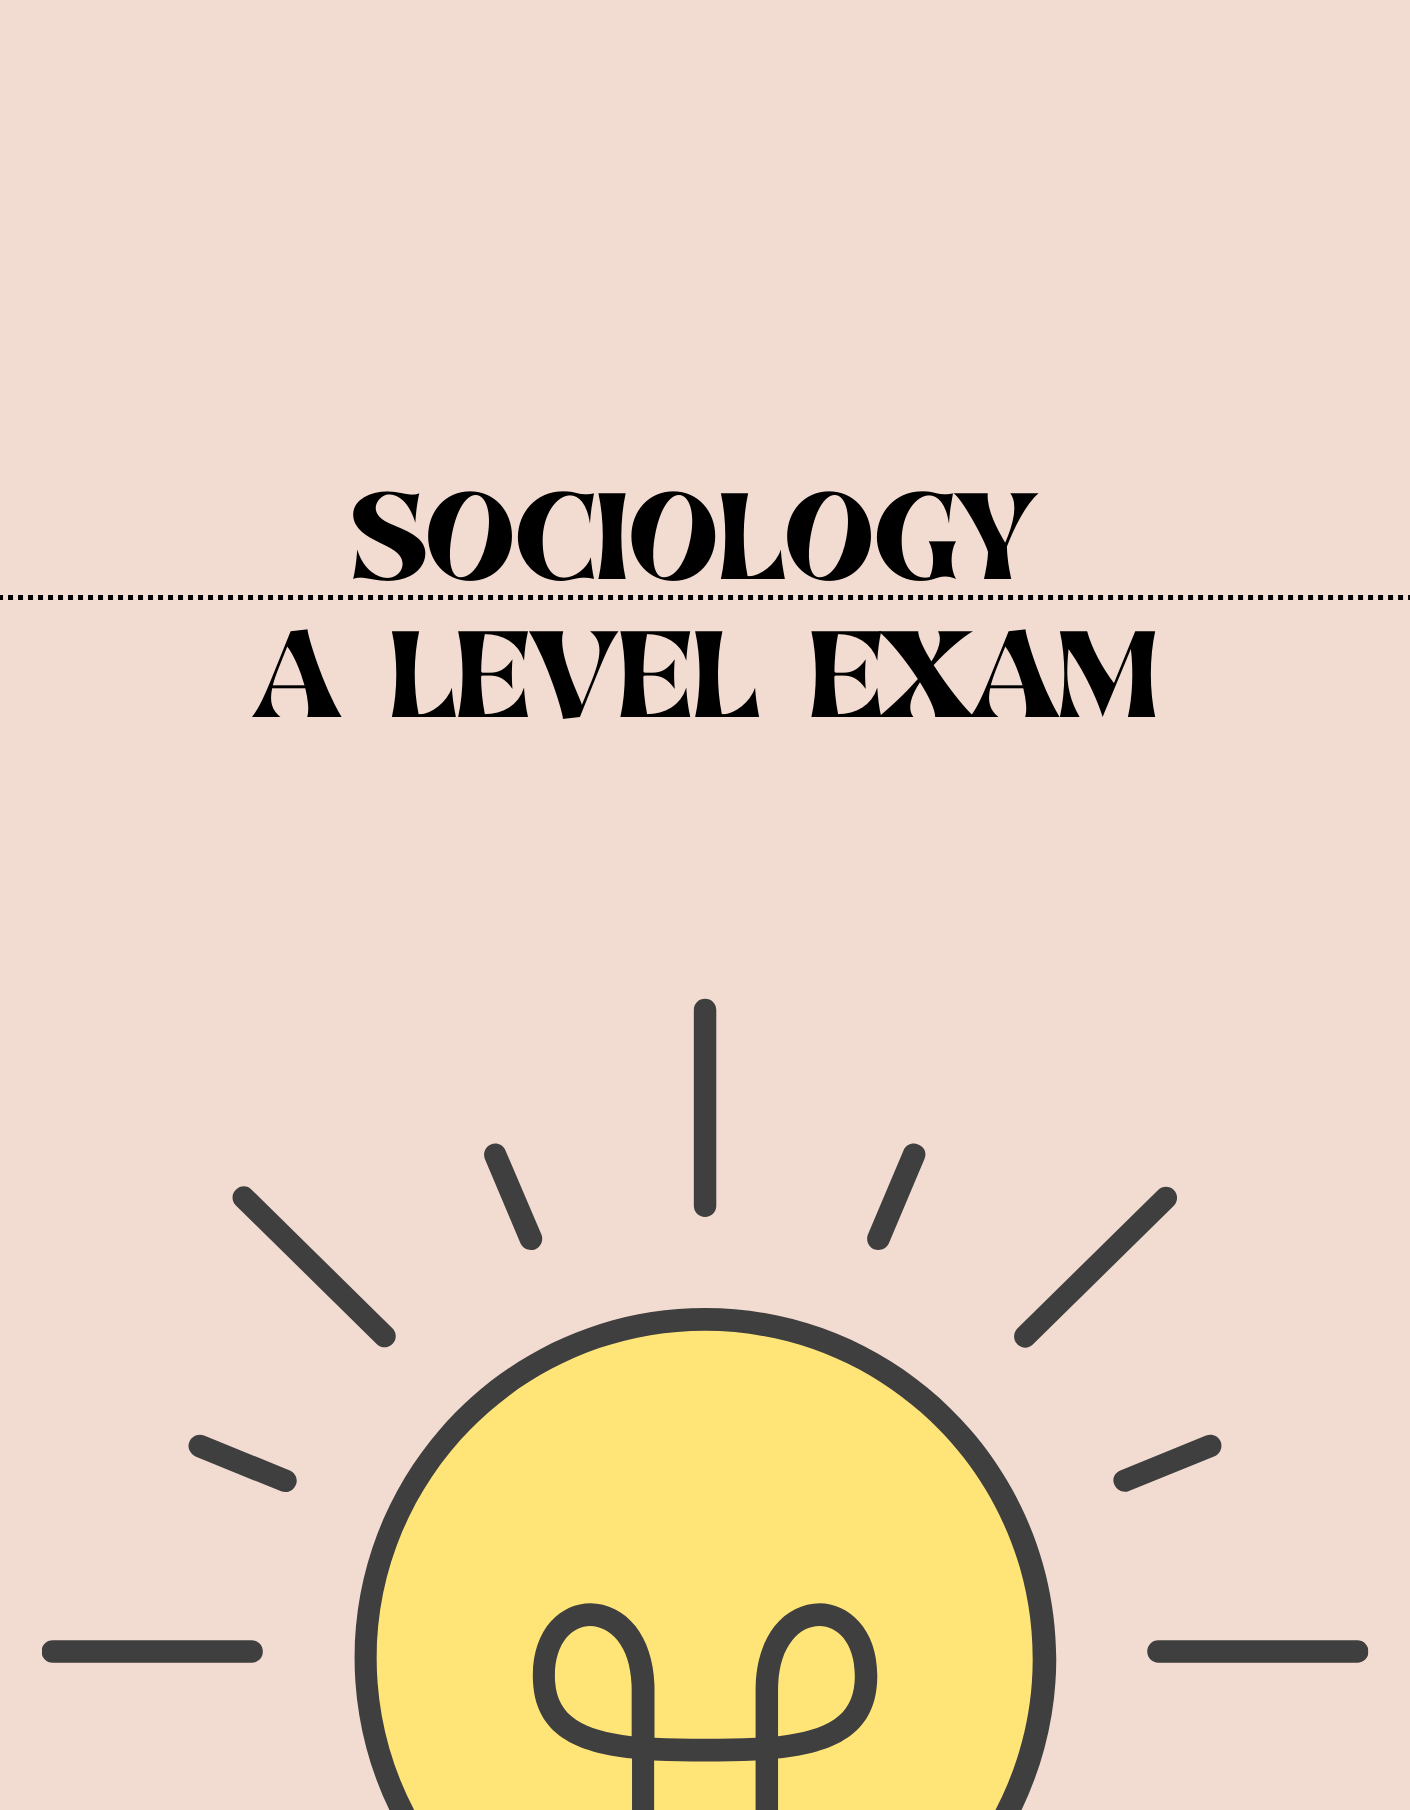 A Level - Sociology Exam - Exam Centre Birmingham